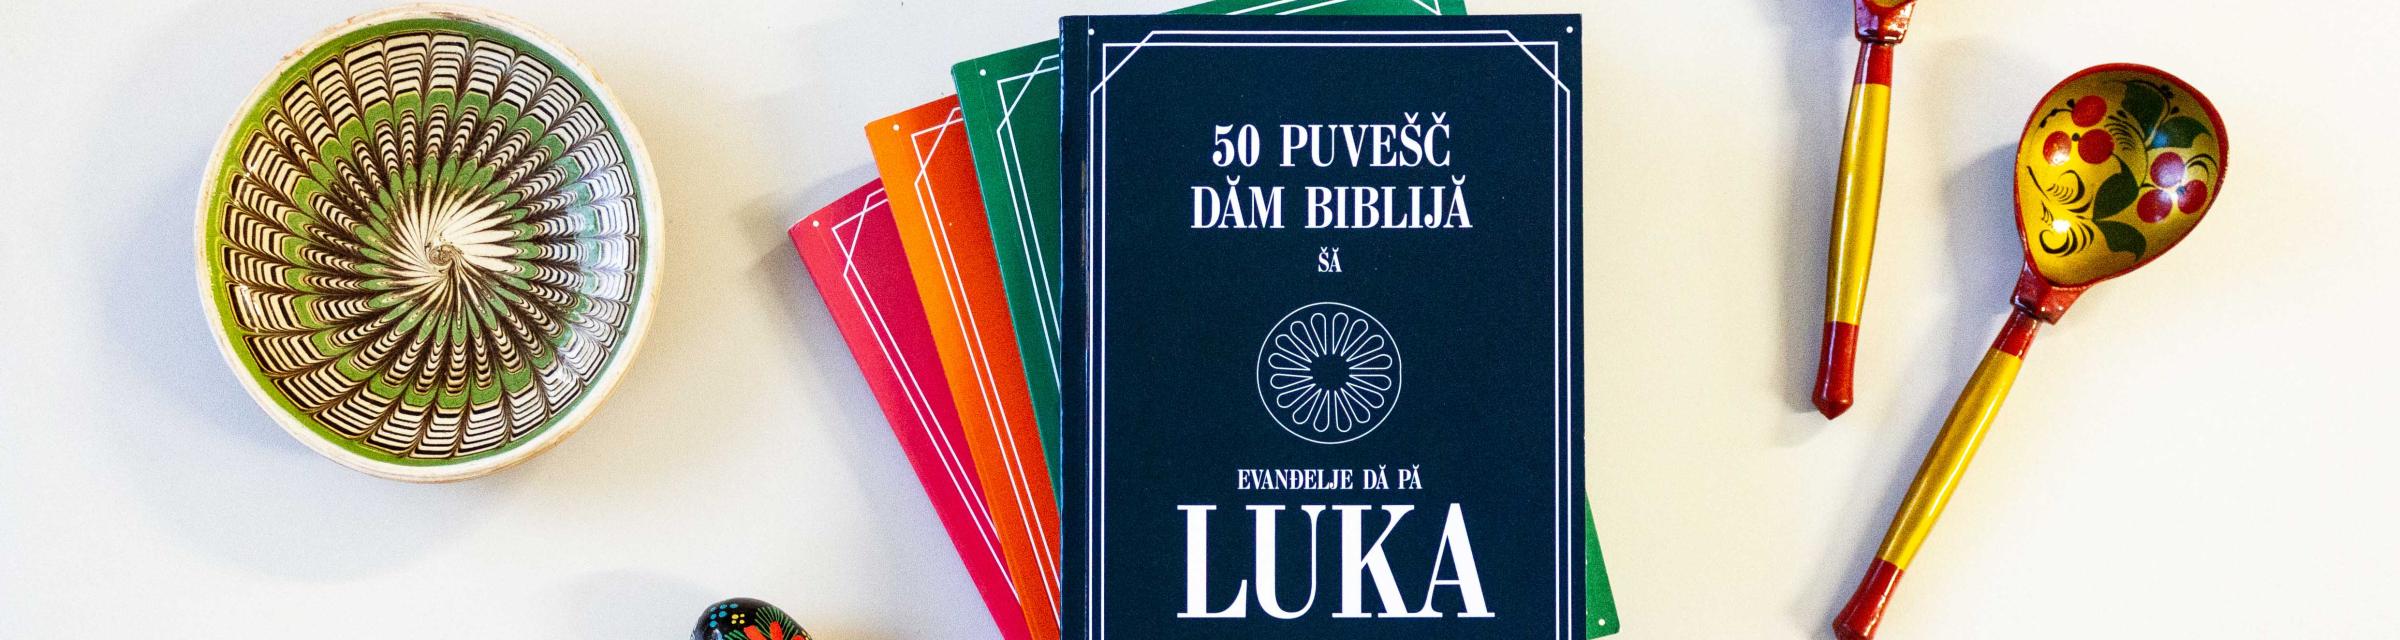 Luke Gospel in Roma languages